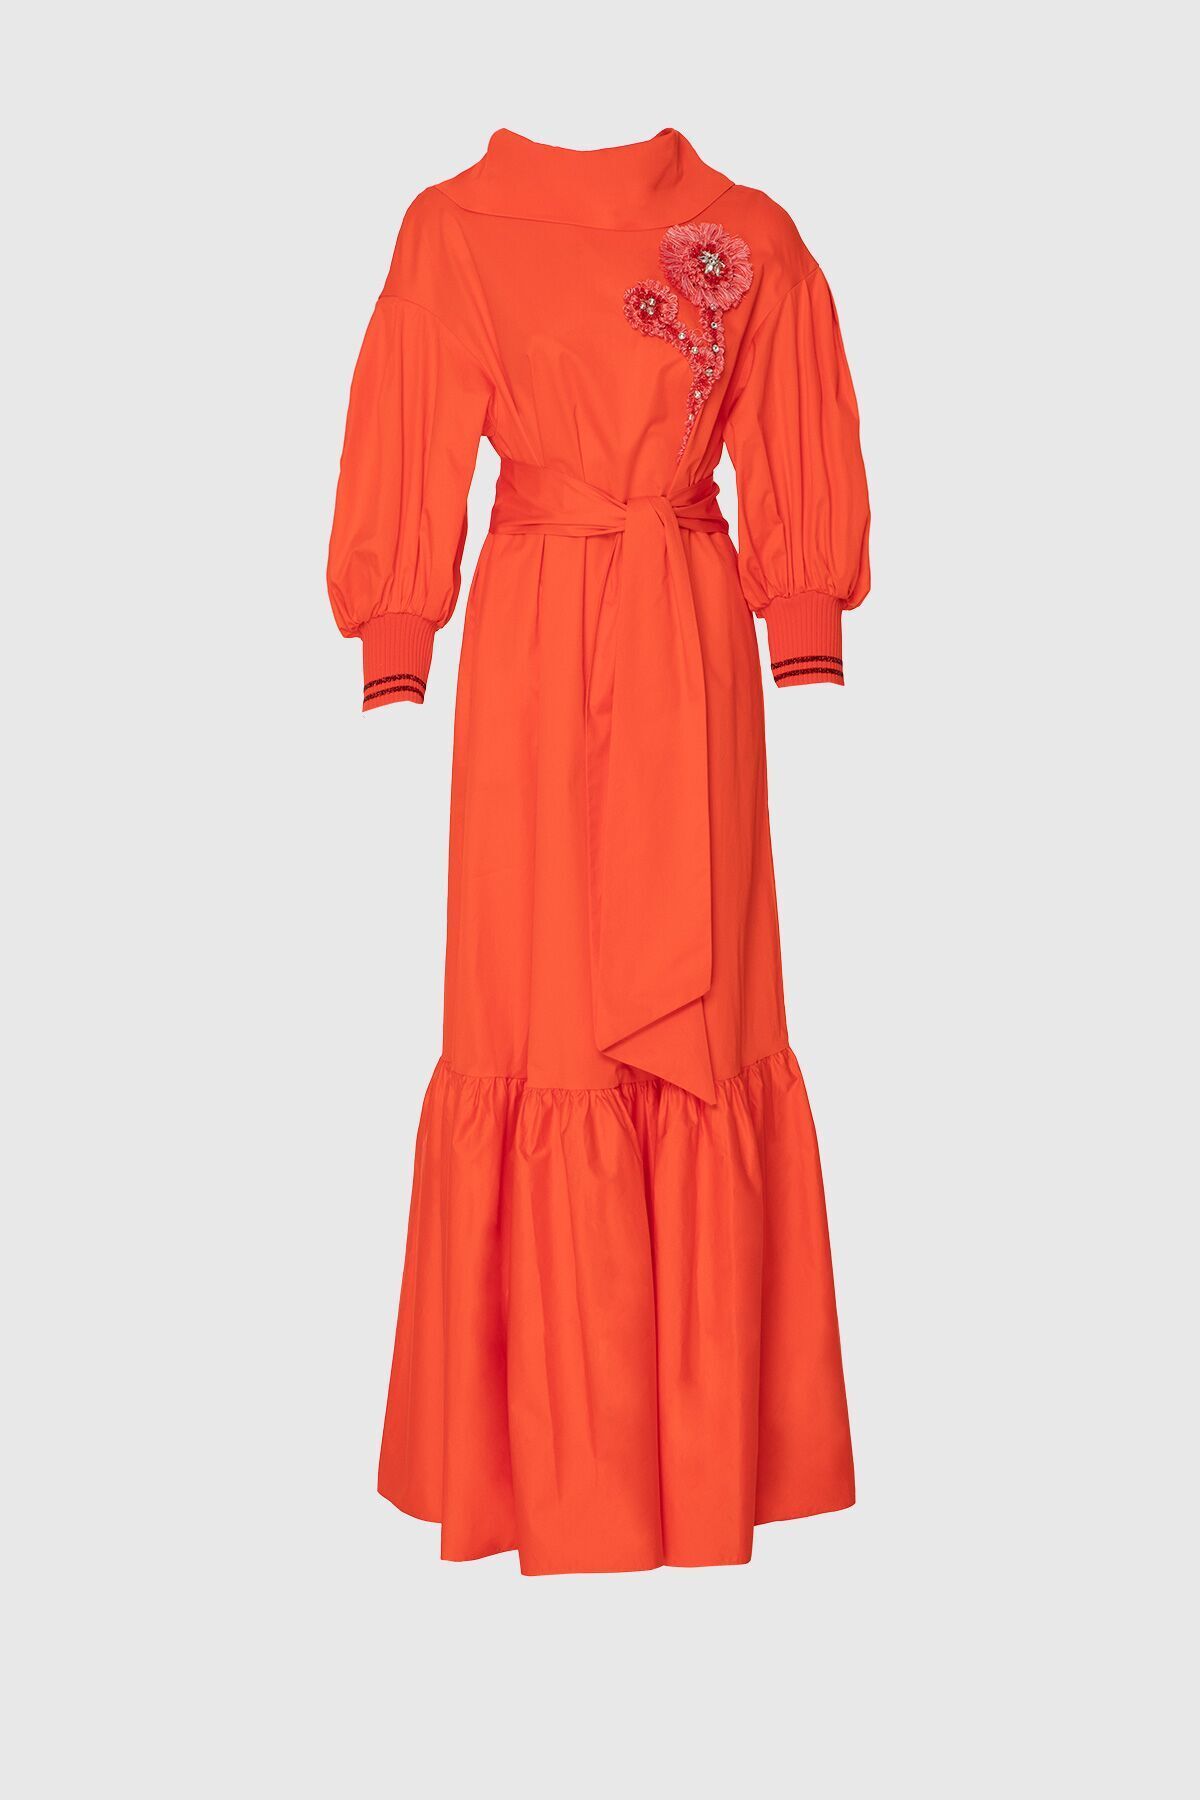 GIZIA Aplike Nakış Işlemeli Uzun Kırmızı Poplin Elbise